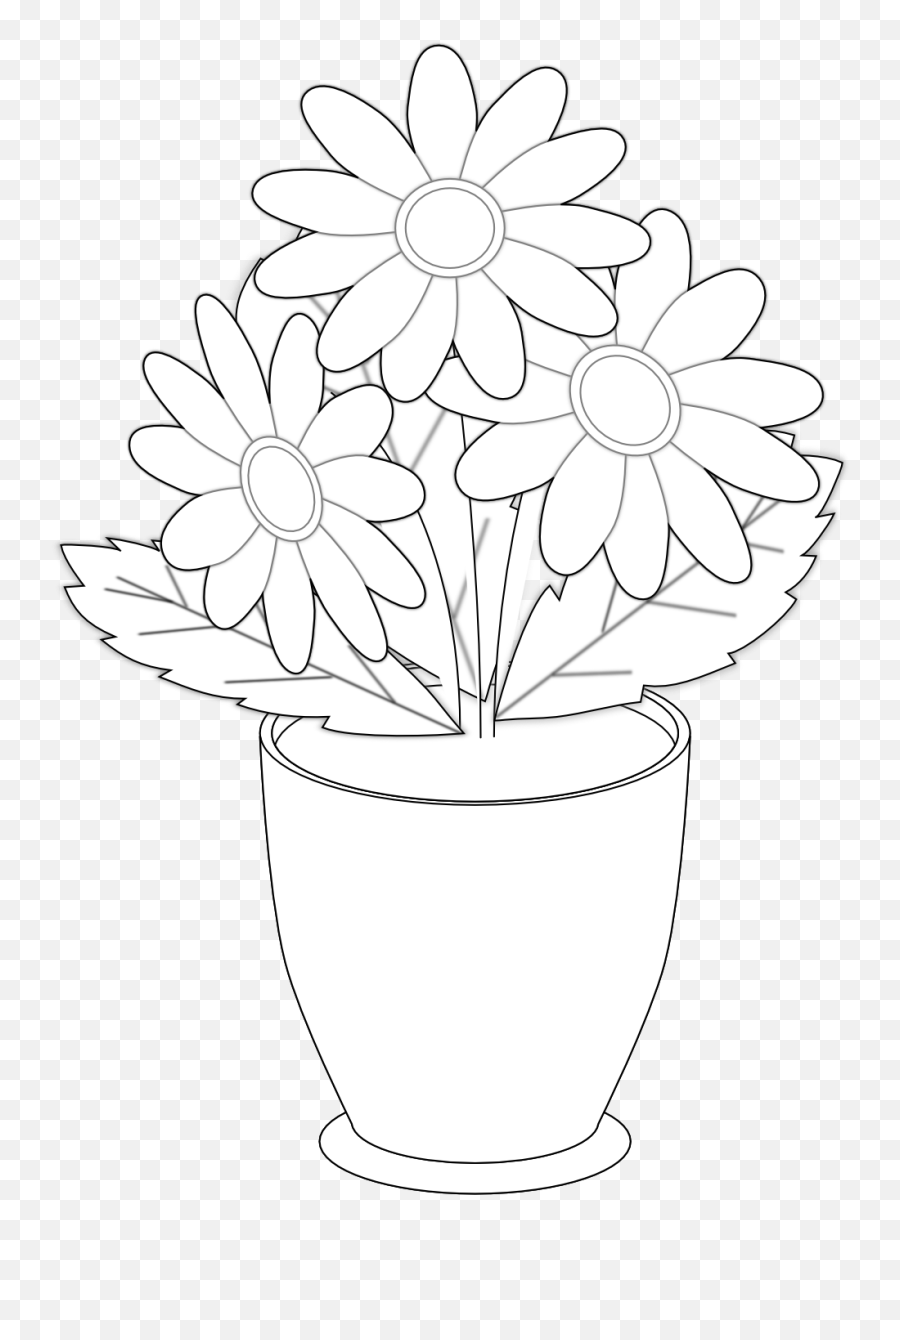 Flowers In Vase Clipart Black Art Clipart Black And Emoji,Flower Clipart Black And White